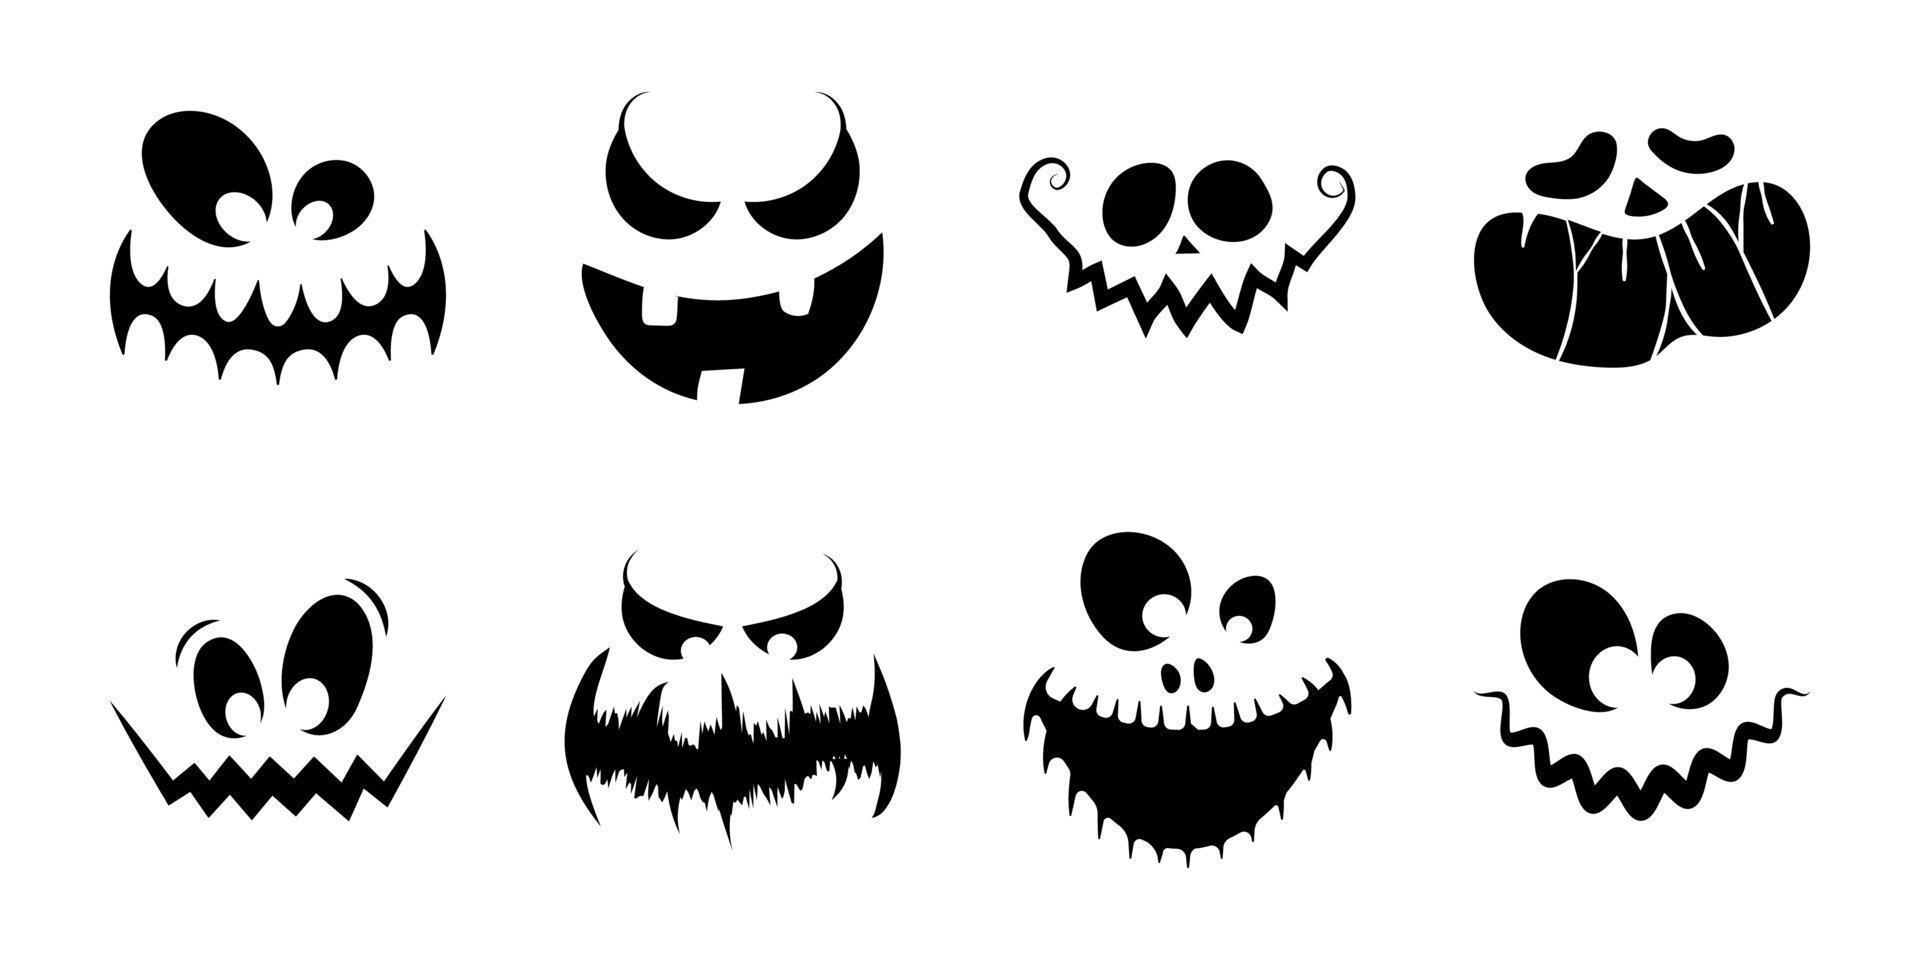 eng en grappig gezichten van pompoenen of halloween geesten. halloween elementen en voorwerpen voor ontwerp projecten. vector